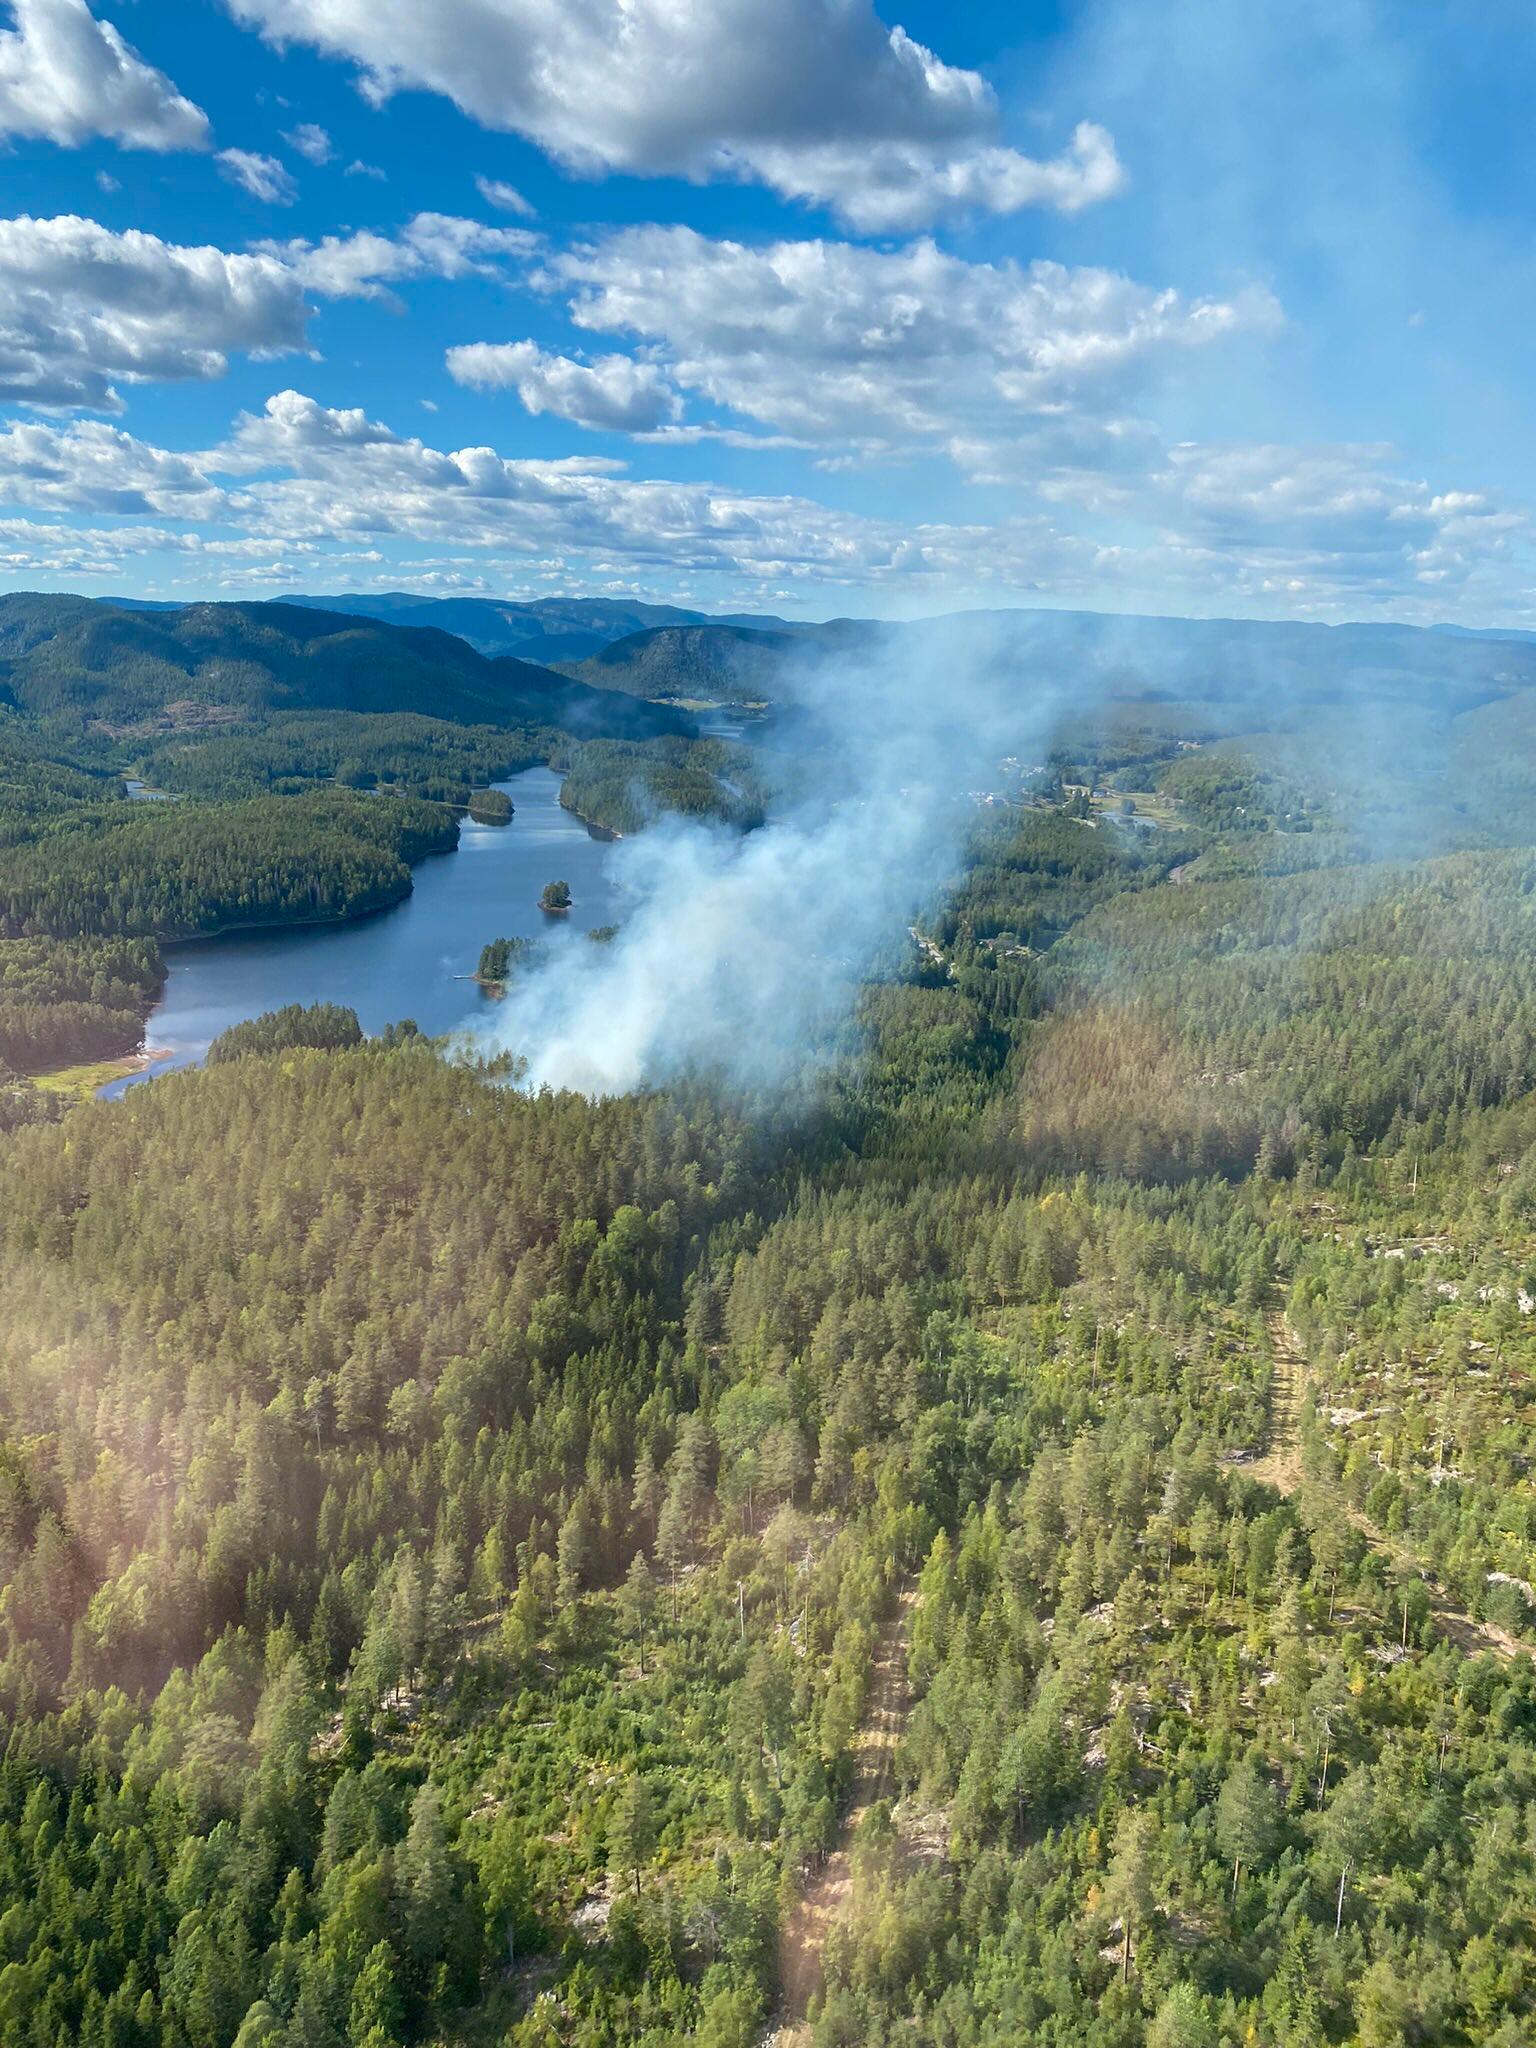 Onsdag brant det i 3–4 mål med skog i Drangedal, og en rekke andre områder i Sørøst-Norge. Torsdag melder brannvesenet i Sørøst-Norge at alle brannene er slukket, men Meteorologisk institutts farevarsel gjelder fortsatt. 